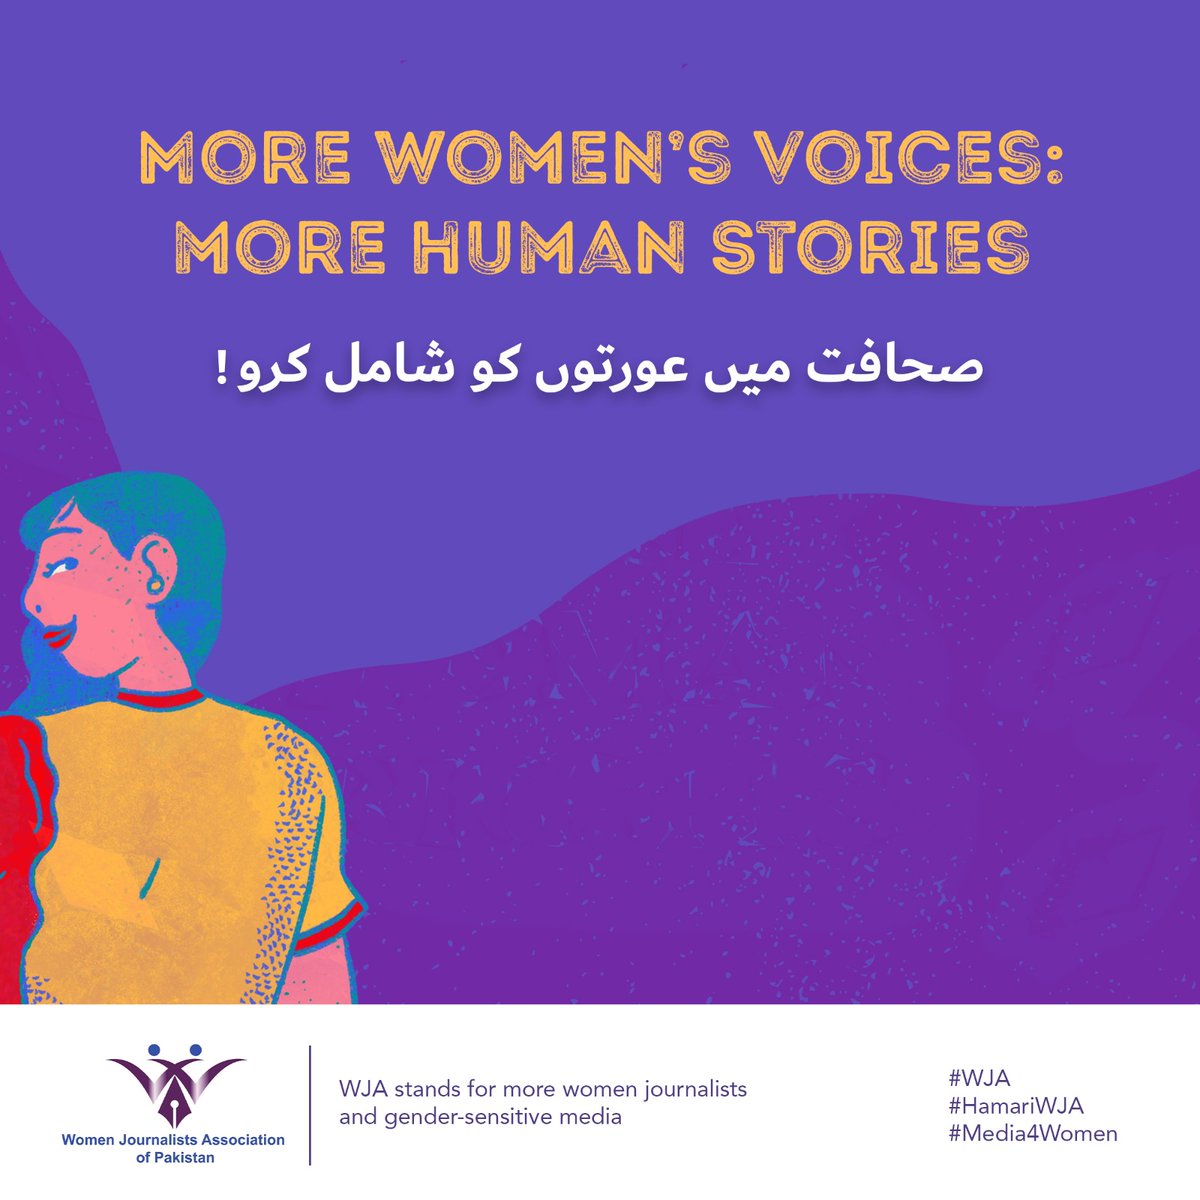 صحافت میں عورتوں کو شامل کرو
#WJA
#HamariWJA
#Media4Women
#women #Womenjournalists #rights #WJAP #media #learning #workshops #trainings #viral #storyofstrength #freelancer
#صحافت #WJEmpowermen
#SheReportsPakistan
#BreakingBarriersWithWJA
#HerVoice
#وجہ
@javerias @asmaschaudhry